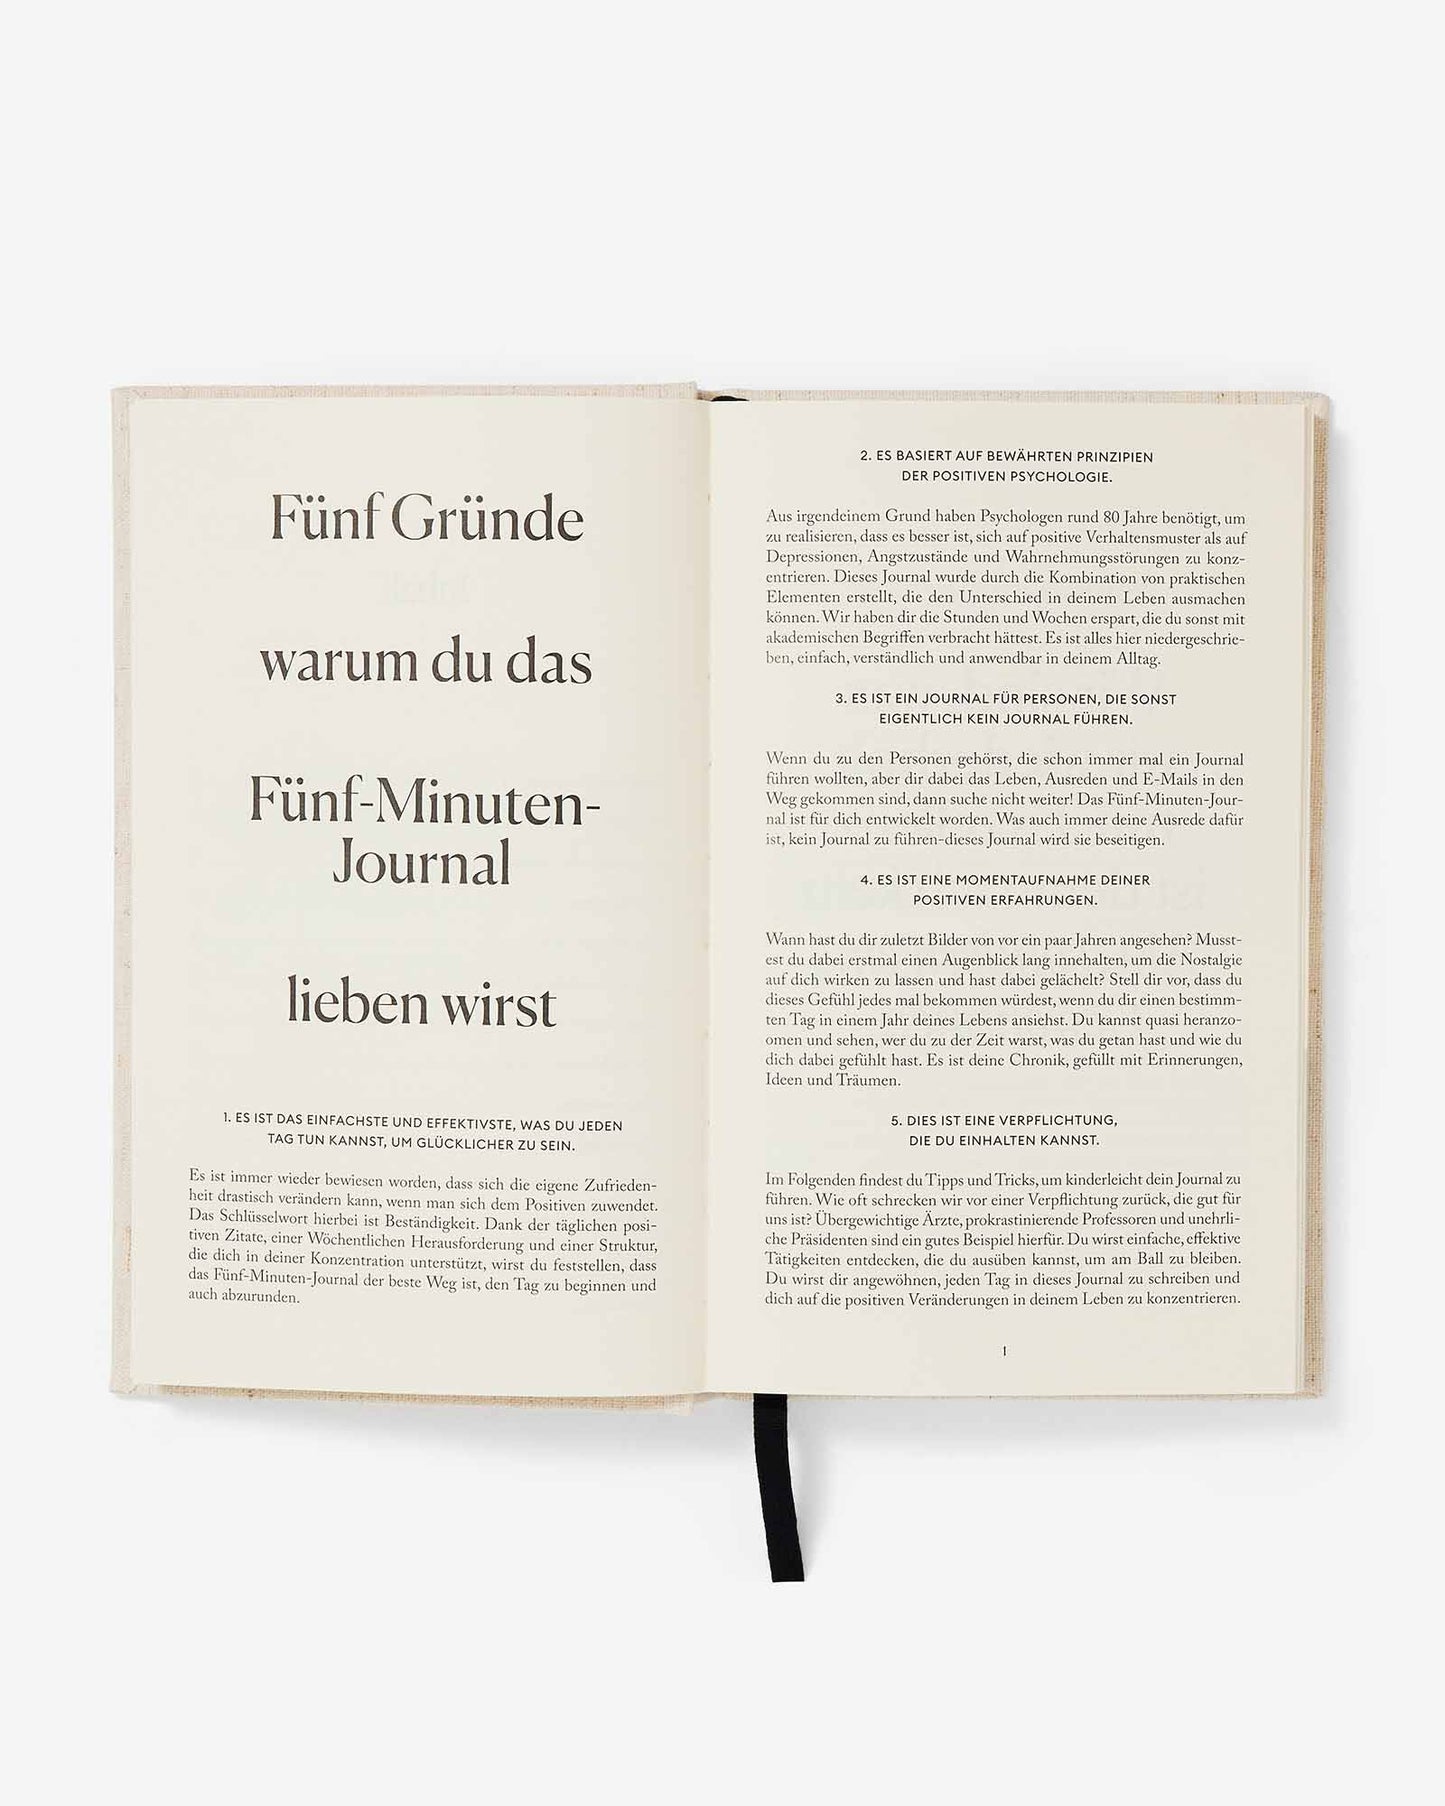 Das Fünf Minuten Journal (German Five Minute Journal) by Intelligent Change